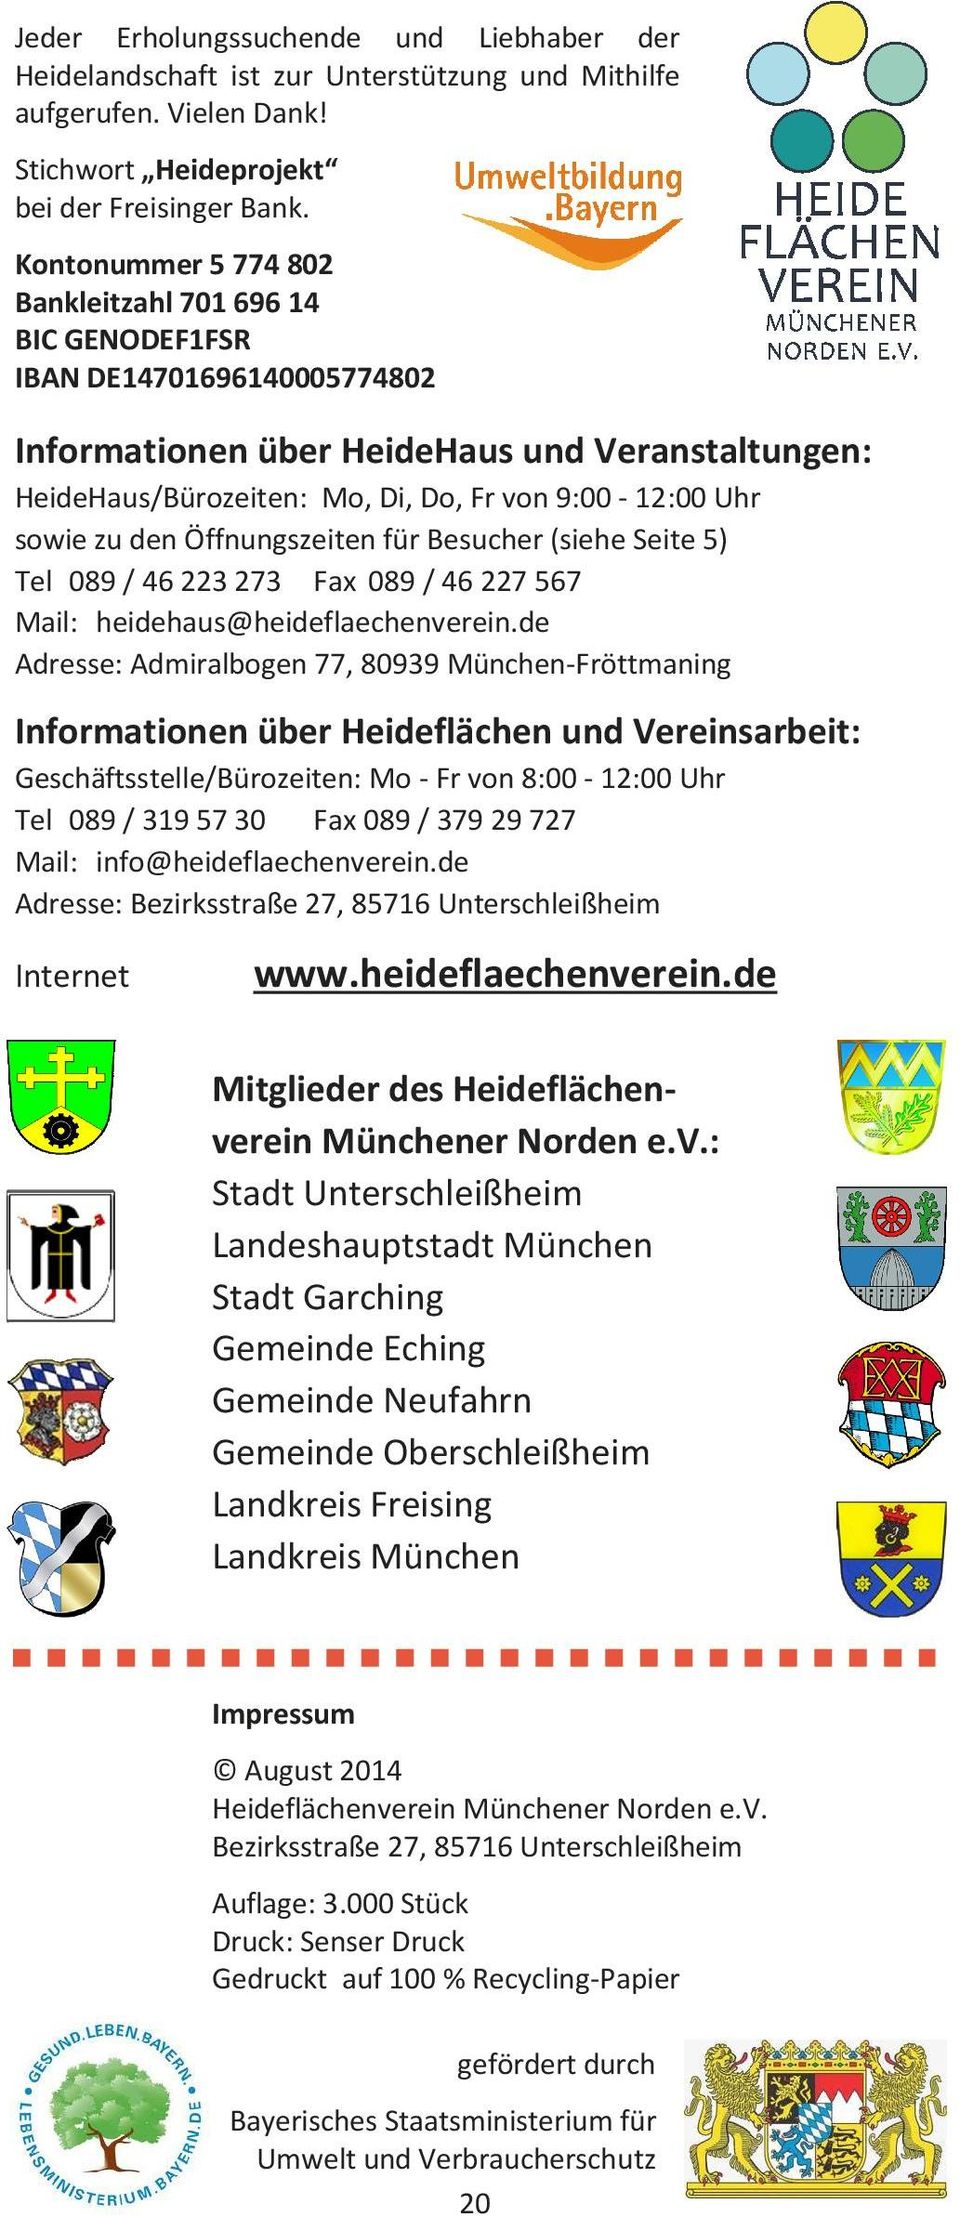 sowie zu den Öffnungszeiten für Besucher (siehe Seite 5) Tel 089 / 46 223 273 Fax 089 / 46 227 567 Mail: heidehaus@heideflaechenverein.